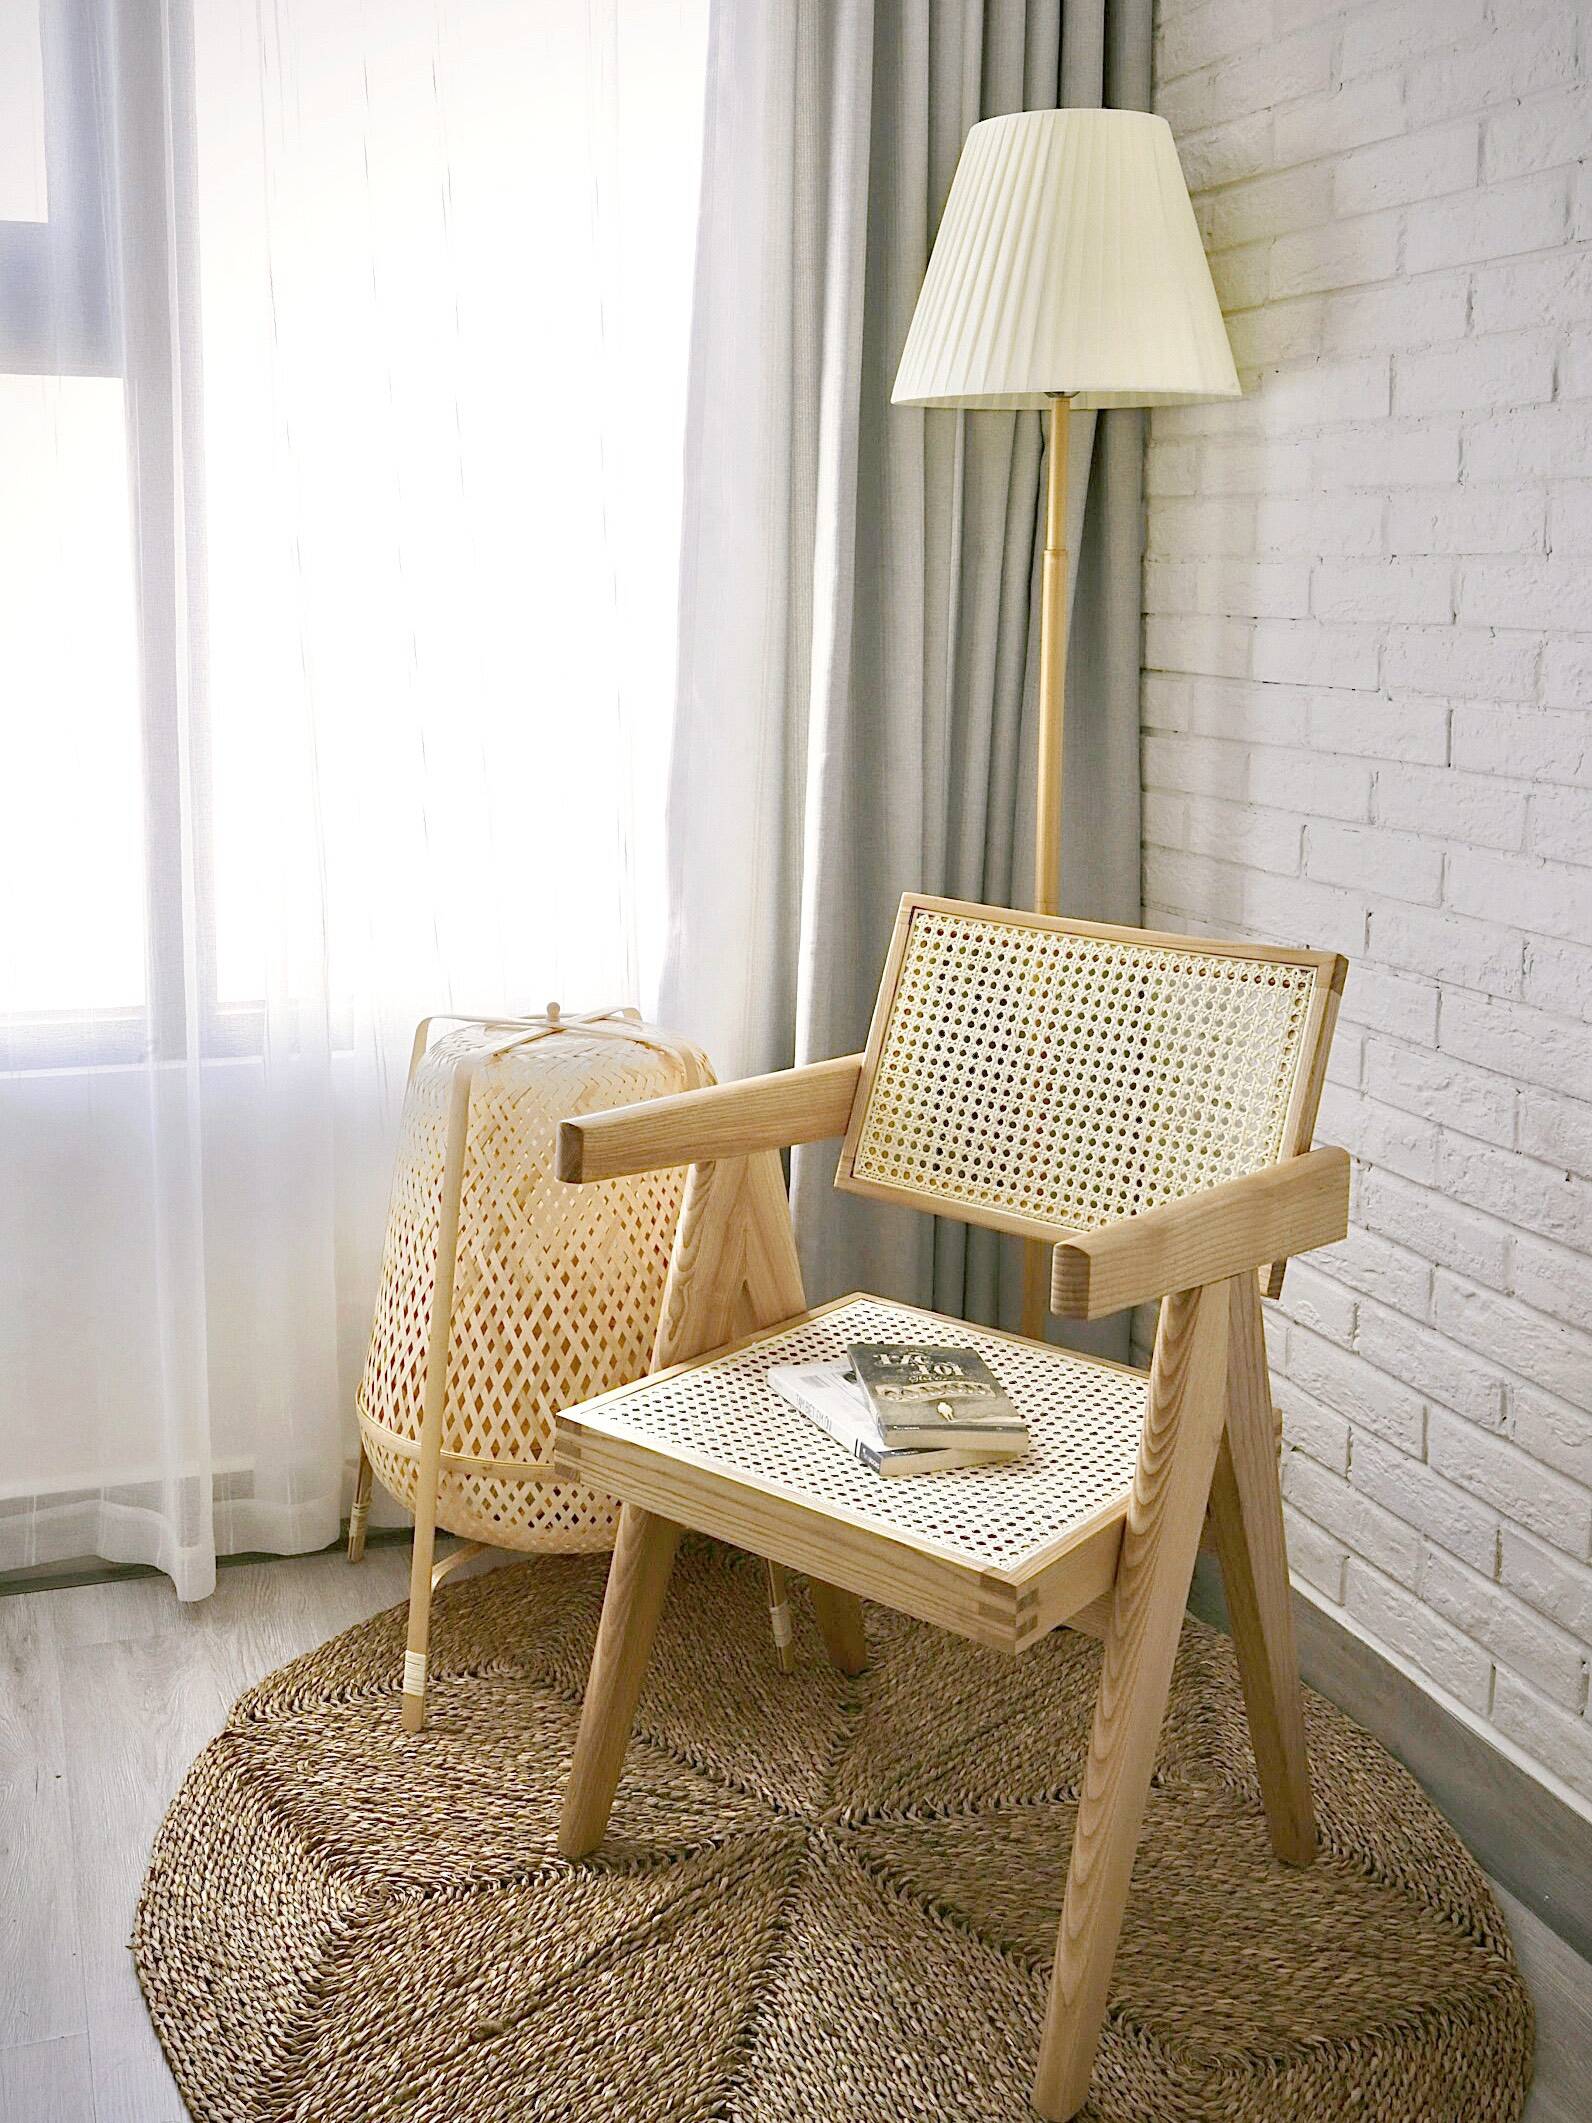 Chiếc ghế gỗ đan tre được sử dụng linh hoạt theo nhu cầu của chủ nhà